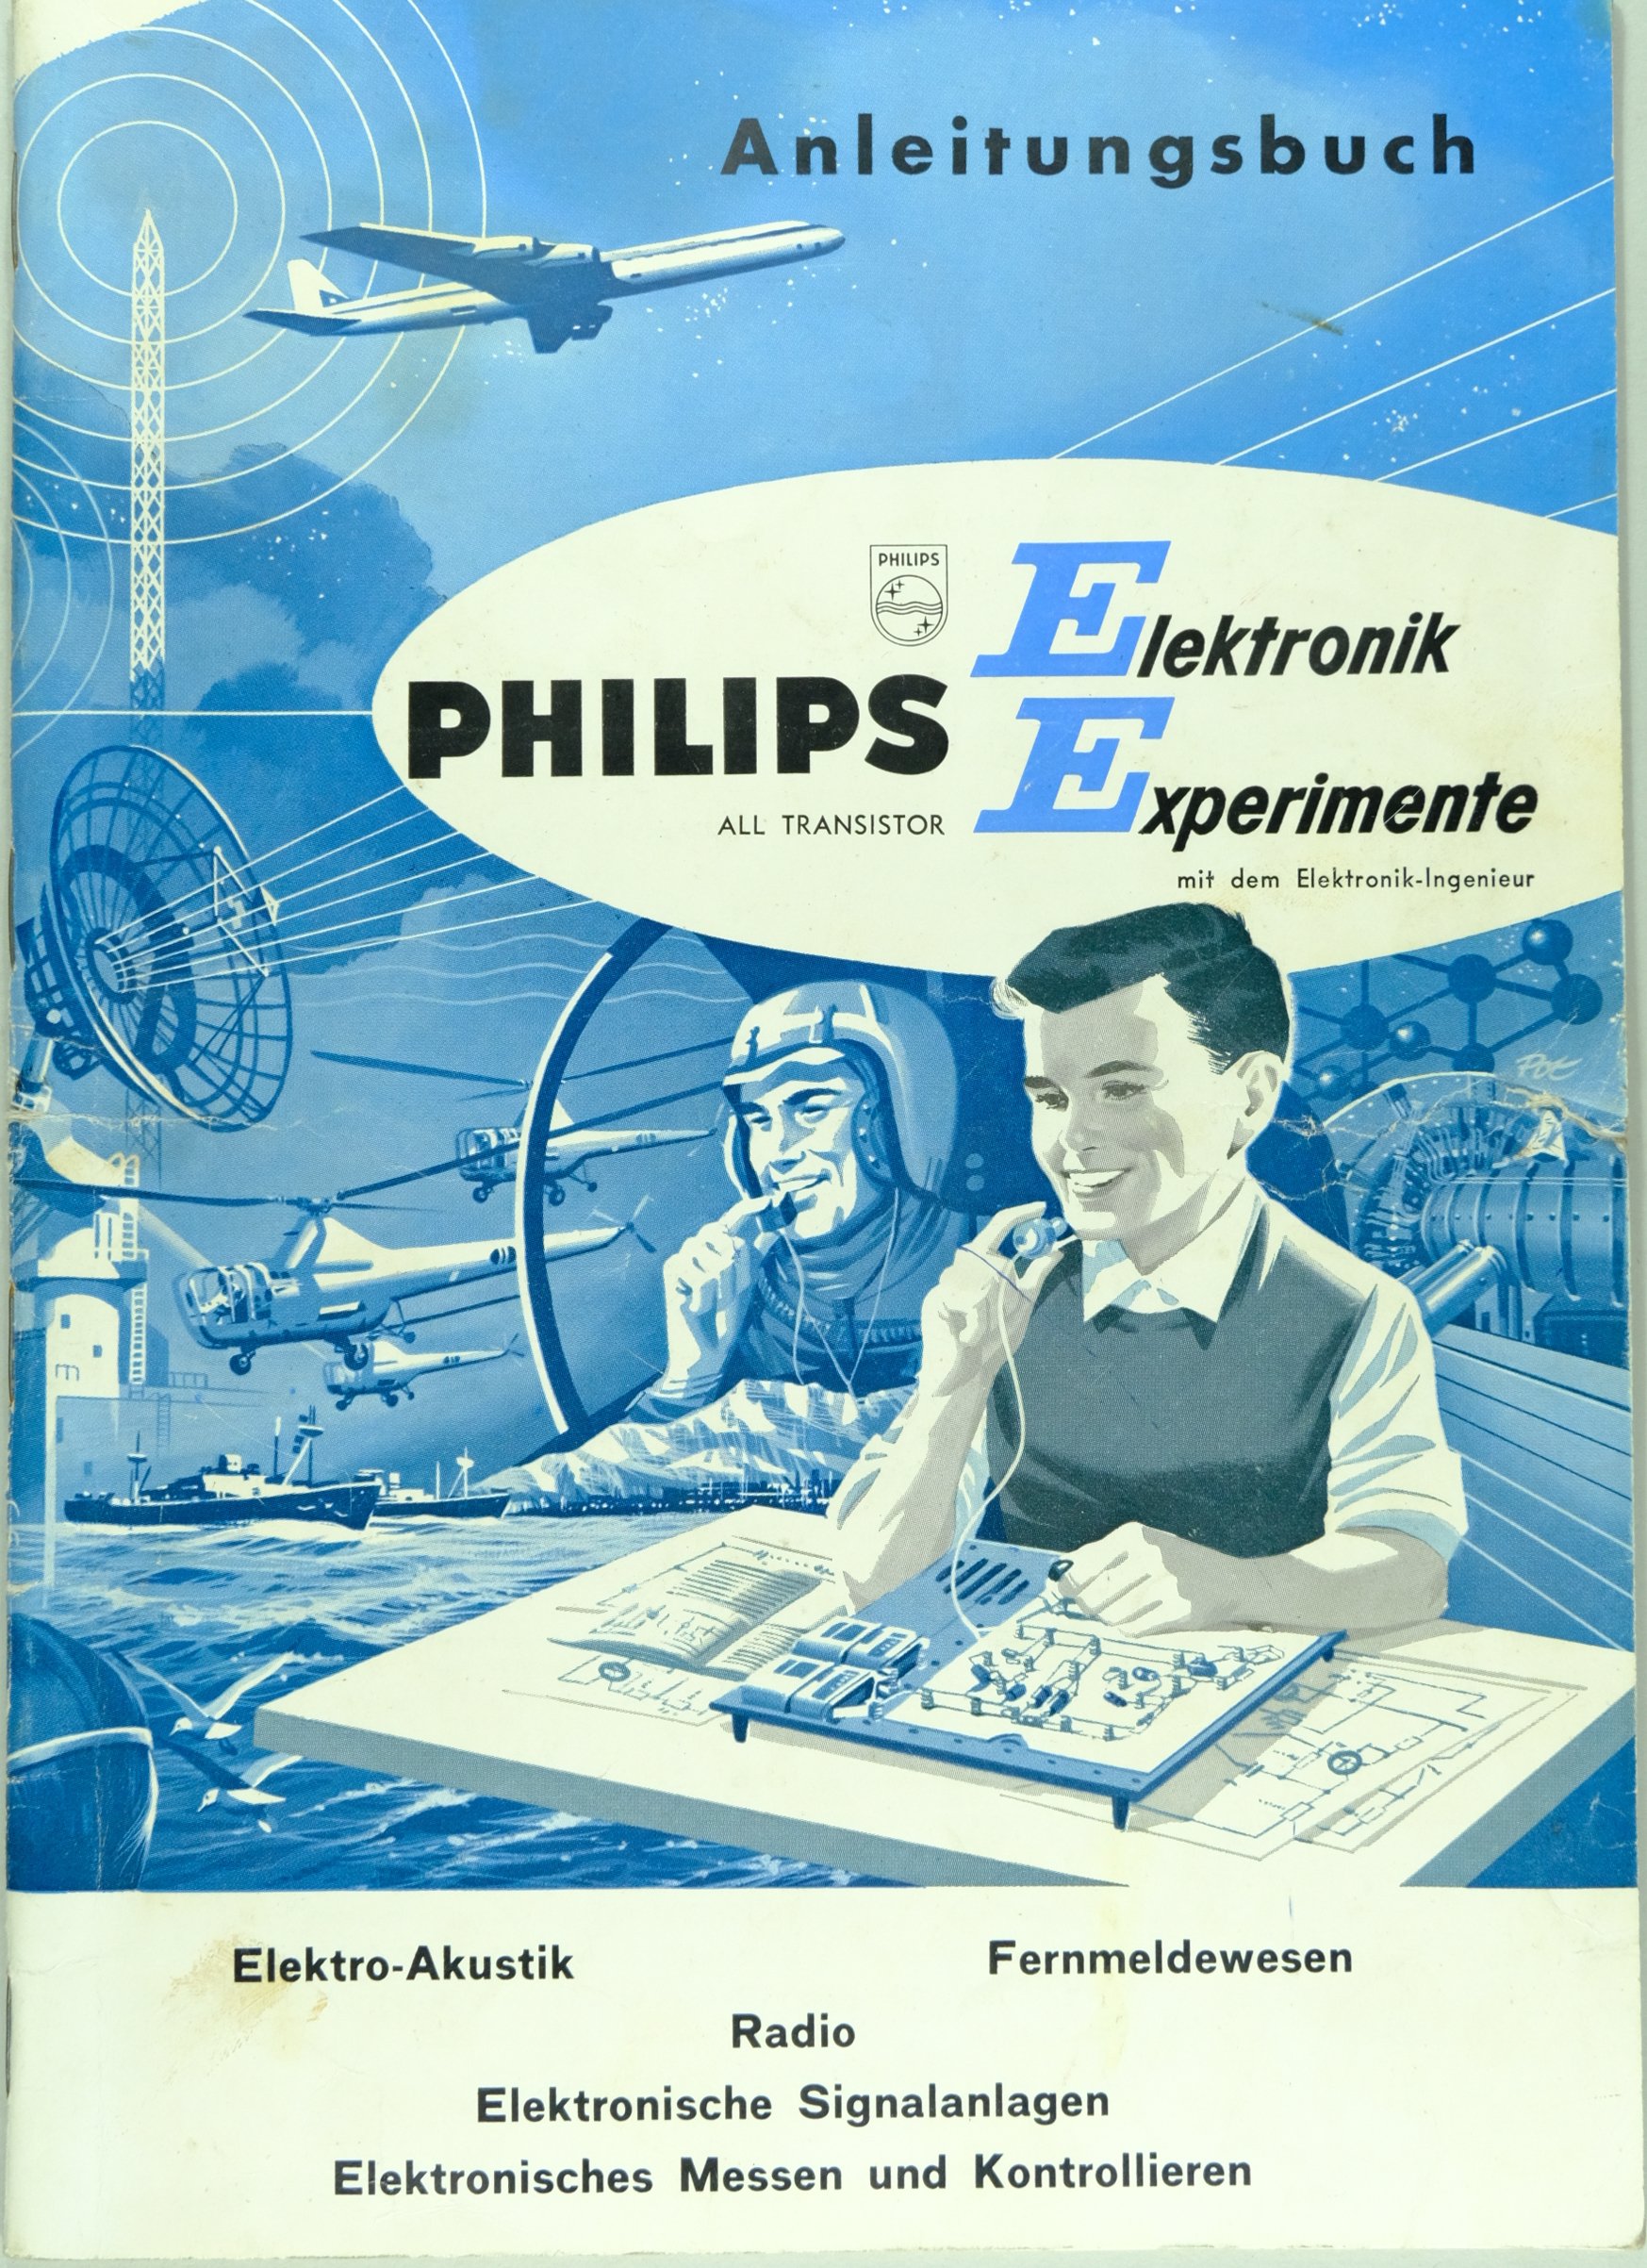 Anleitungsbuch - Philips Elektronik Experimen (Volkskunde- und Freilichtmuseum Roscheider Hof CC0)